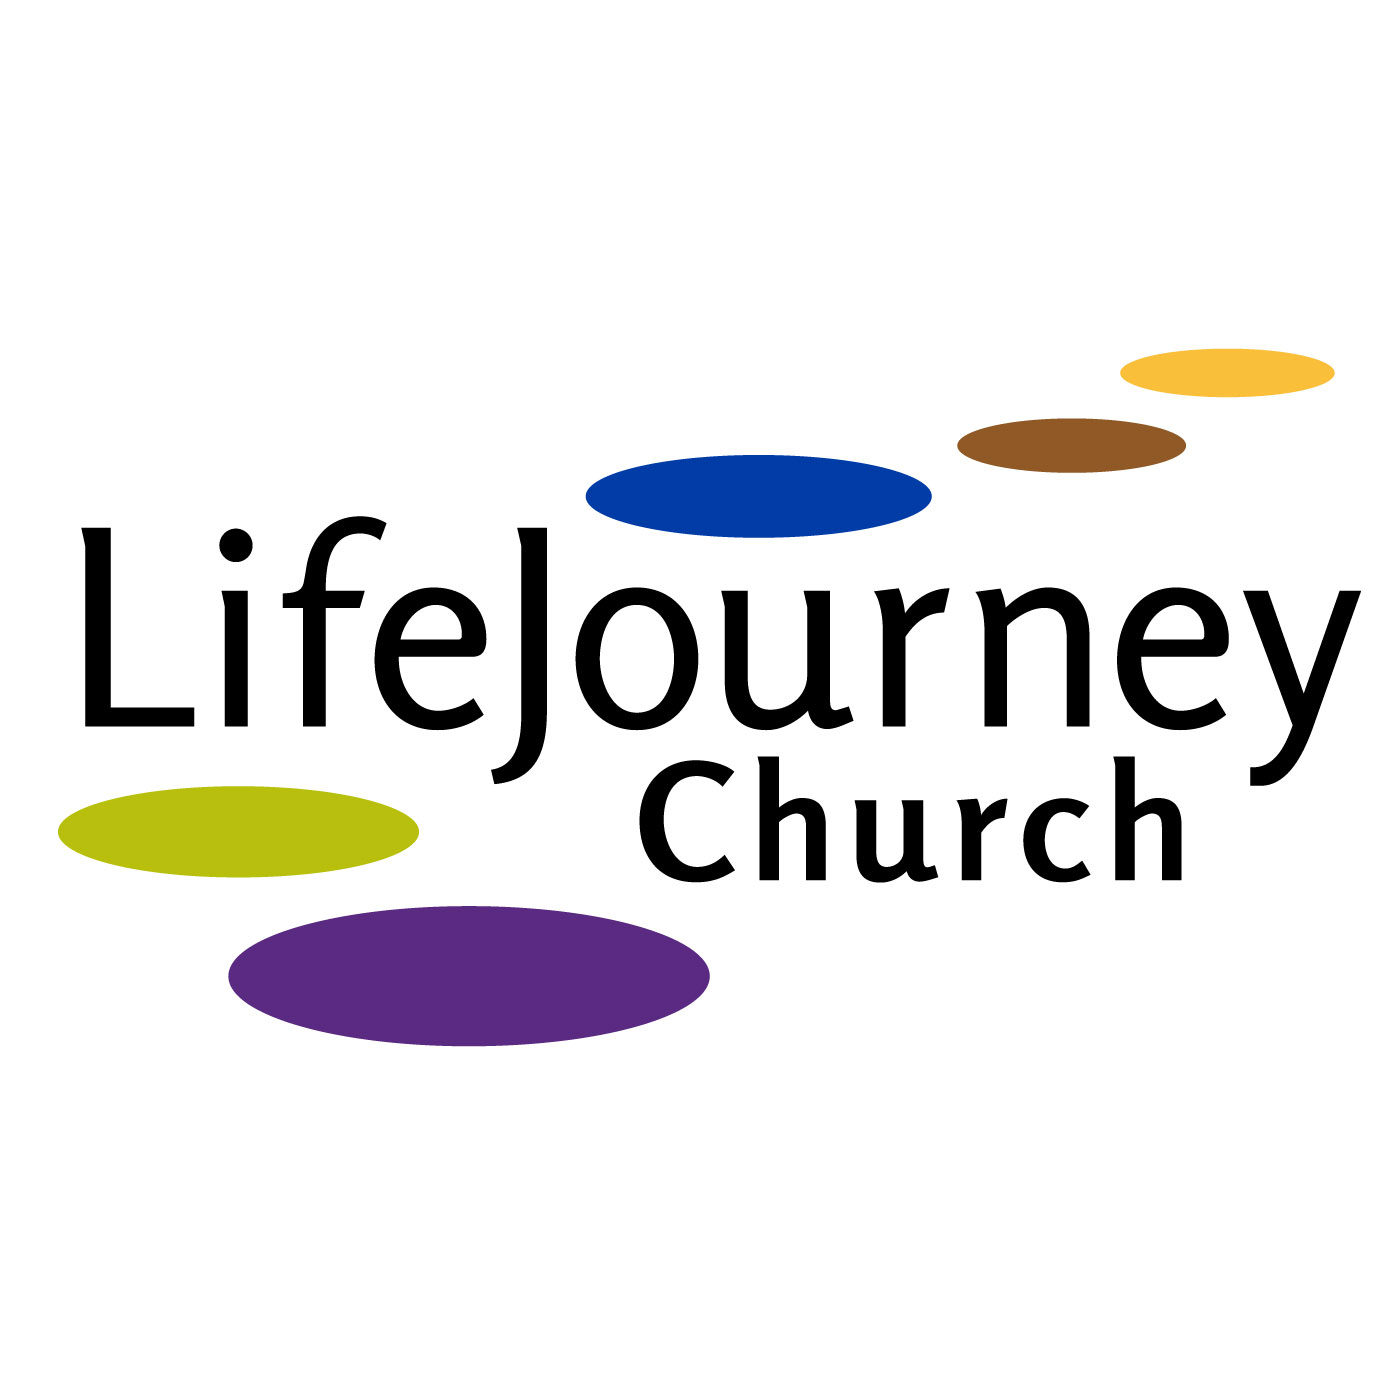 life journey church photos